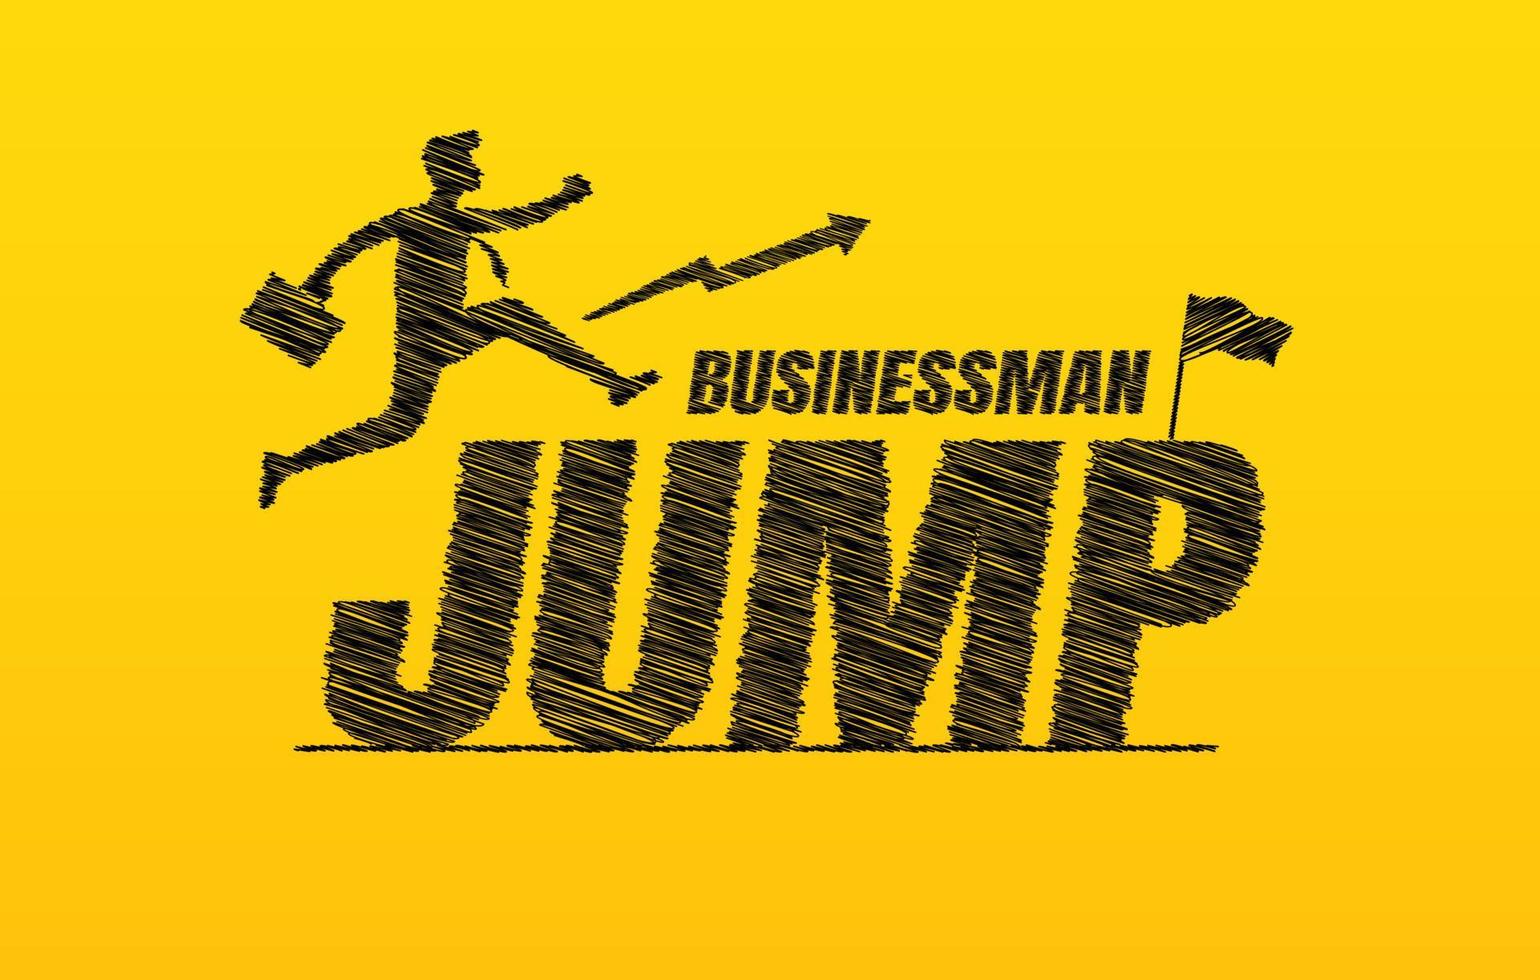 hombre de negocios saltando sobre el texto de garabatos sobre fondo amarillo, concepto de tipografía de letras de salto dibujado a mano, cita de motivación empresarial vector